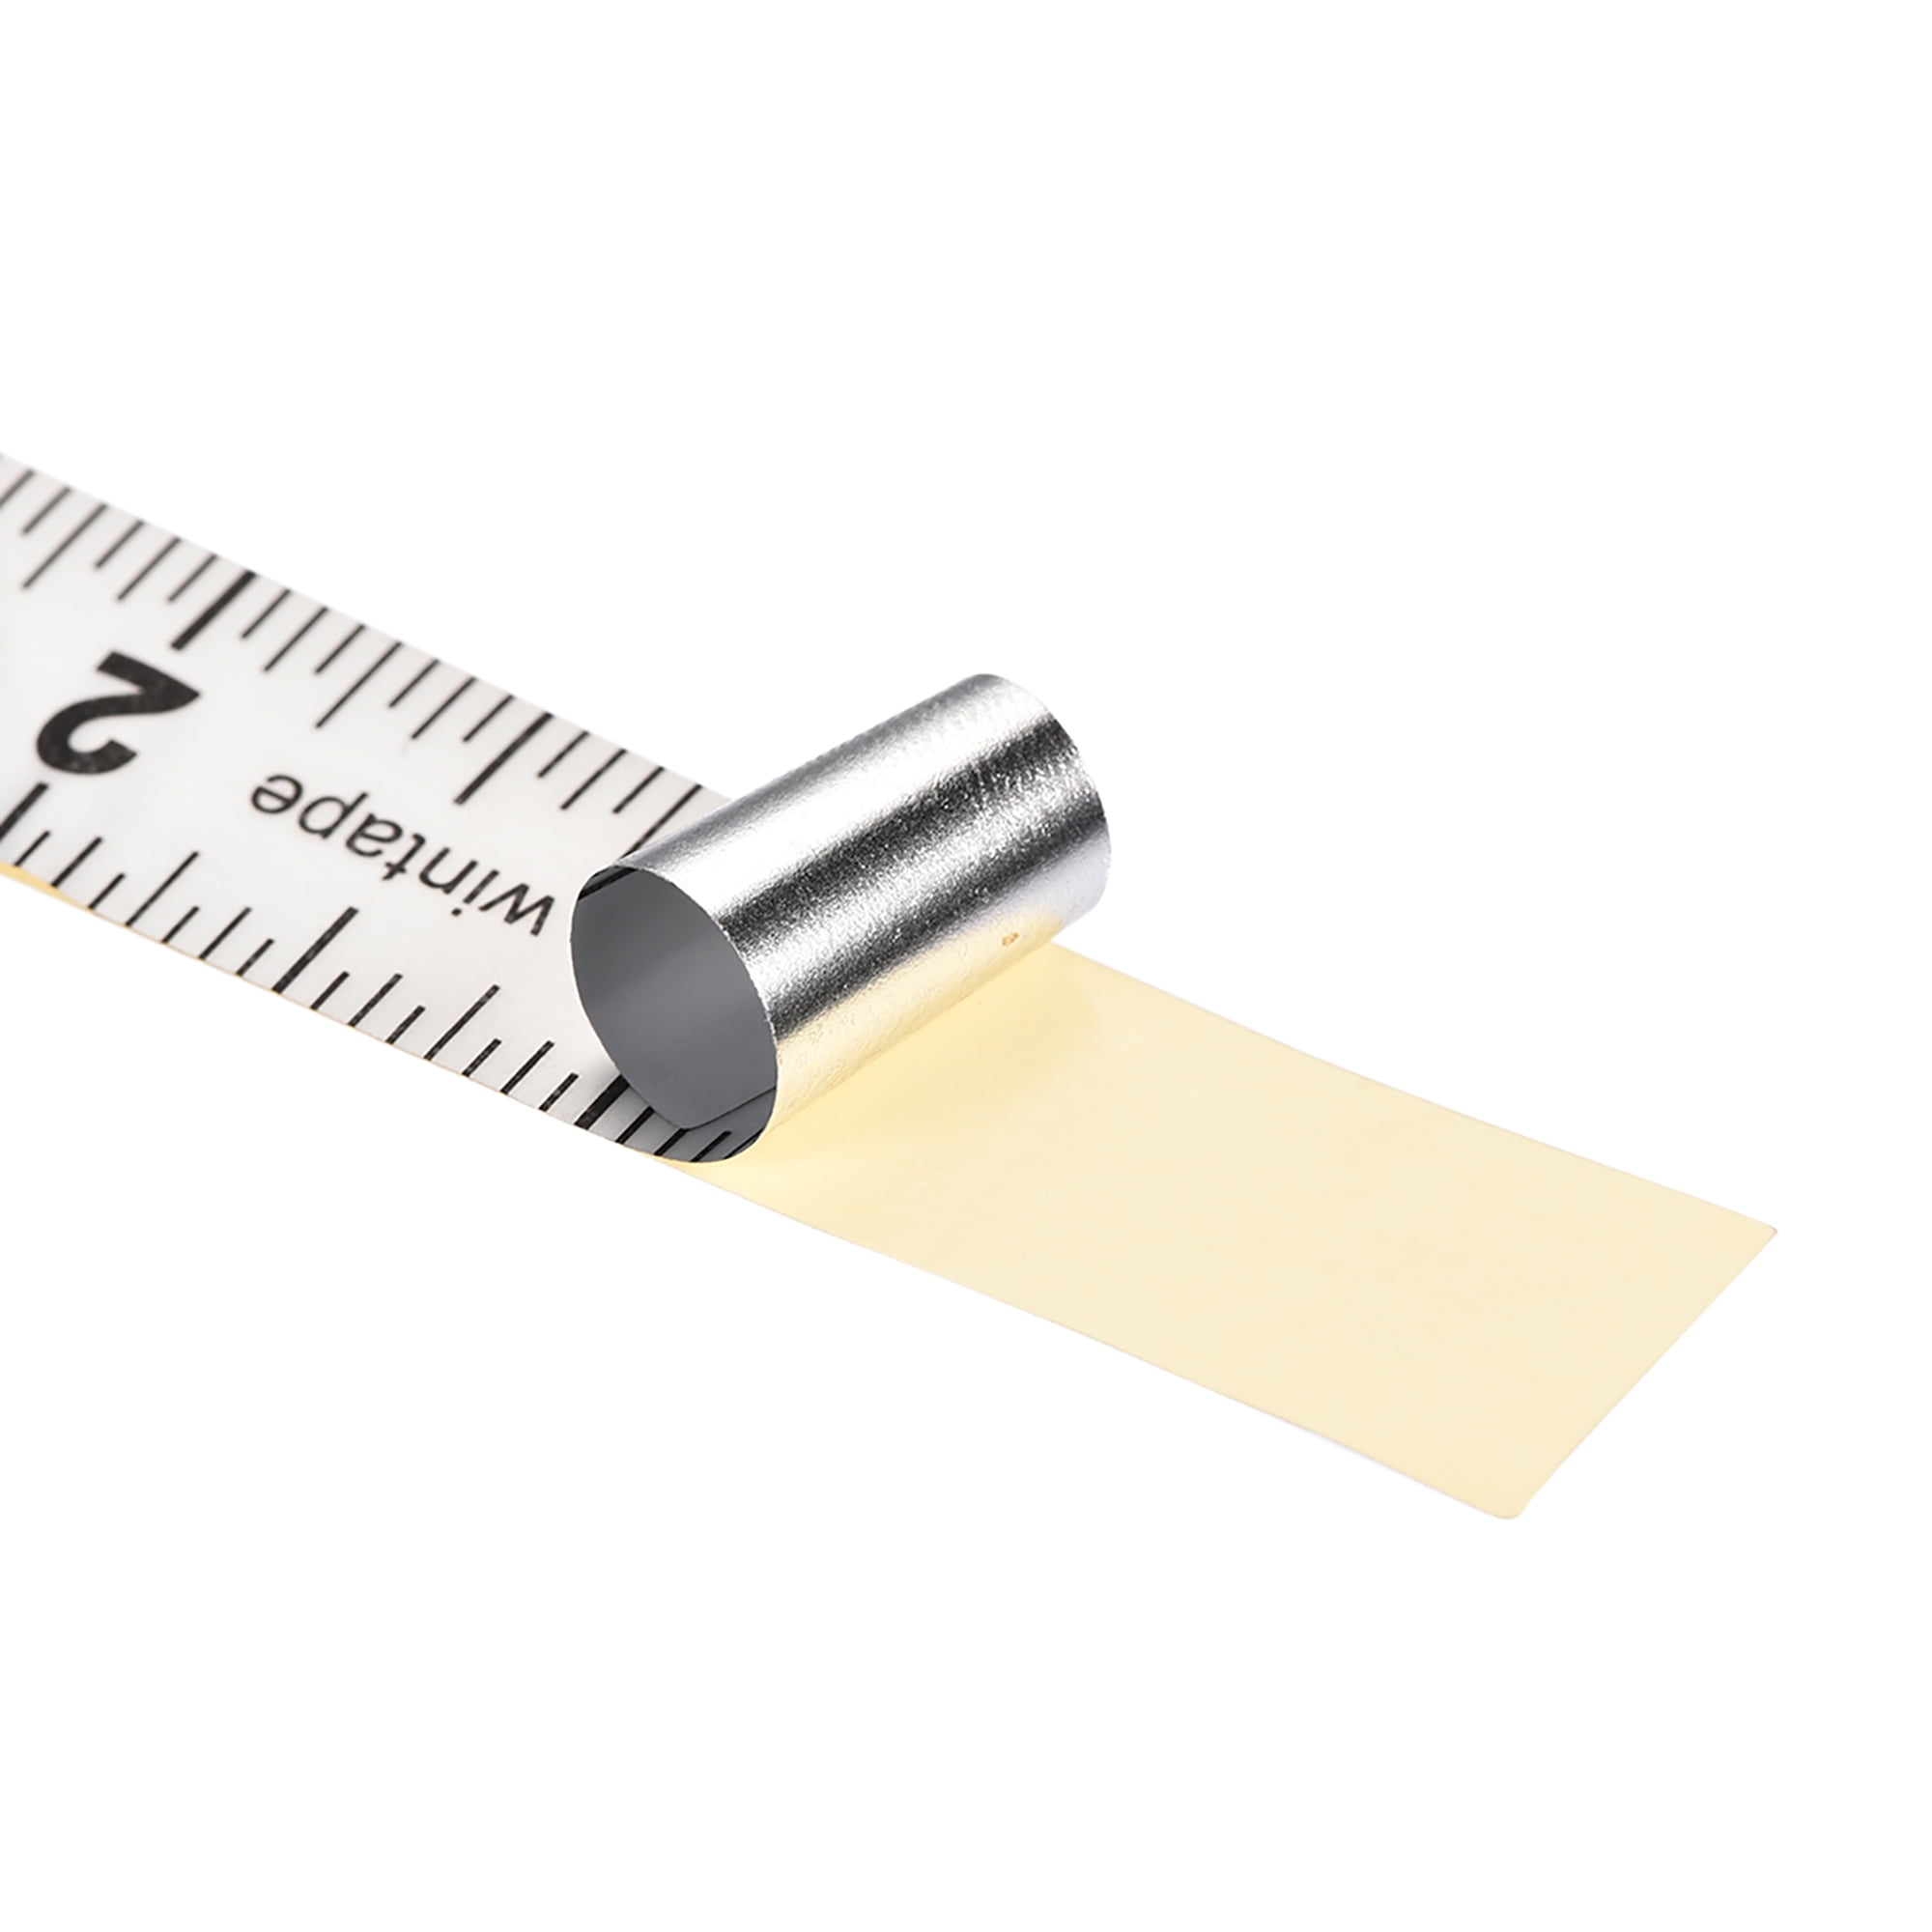 EDSRDRUS 3 Pack Ruler Tape 1/2, 1, 1-1/2 inch Masking Tape Measure,  Repeating 12inch Imprint Adhesive Tape Measure, No Residue & Waterproof  Ruler Tape